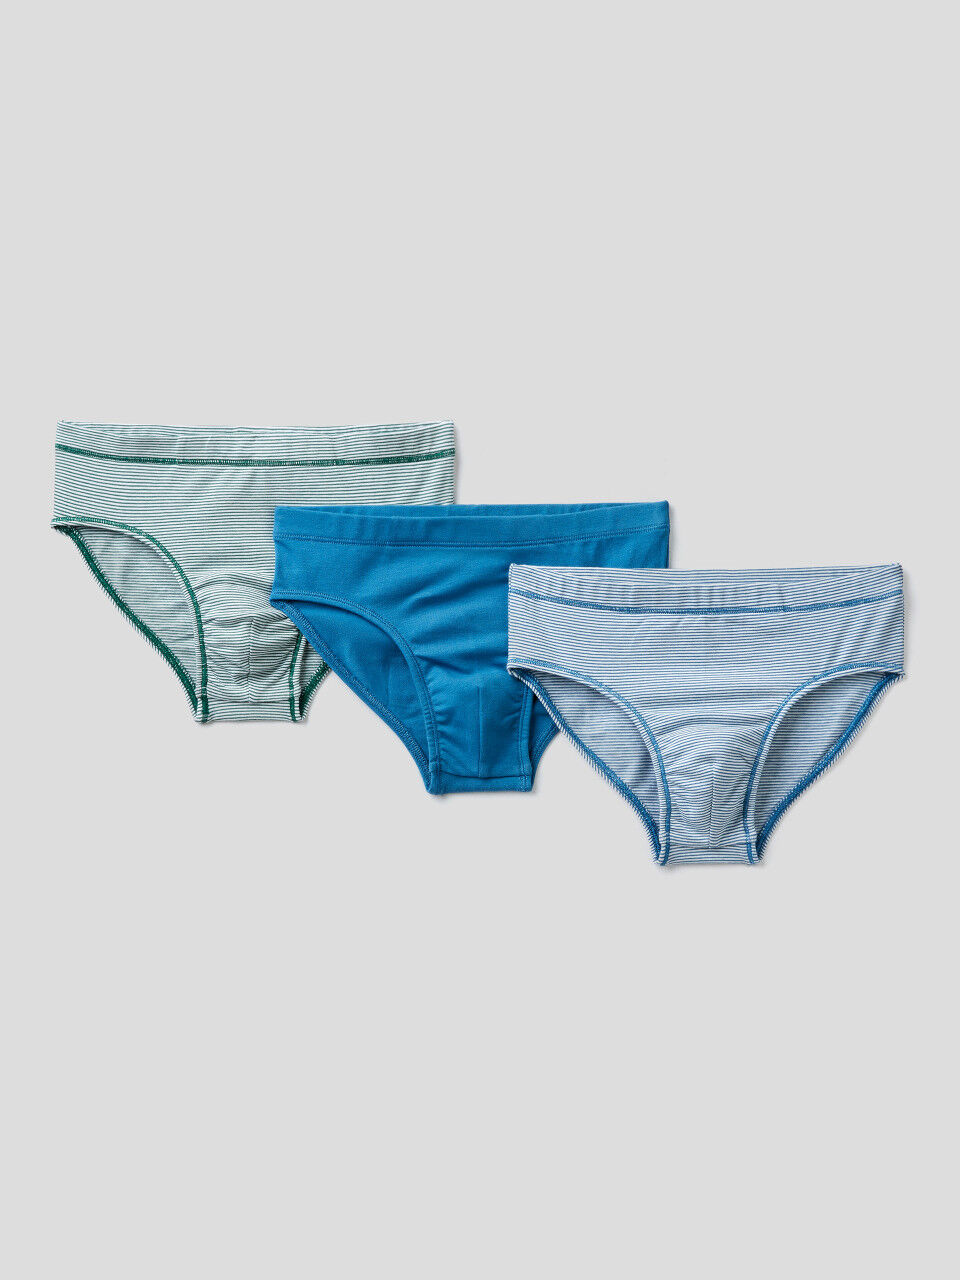 Three pairs of snug underwear in stretch cotton